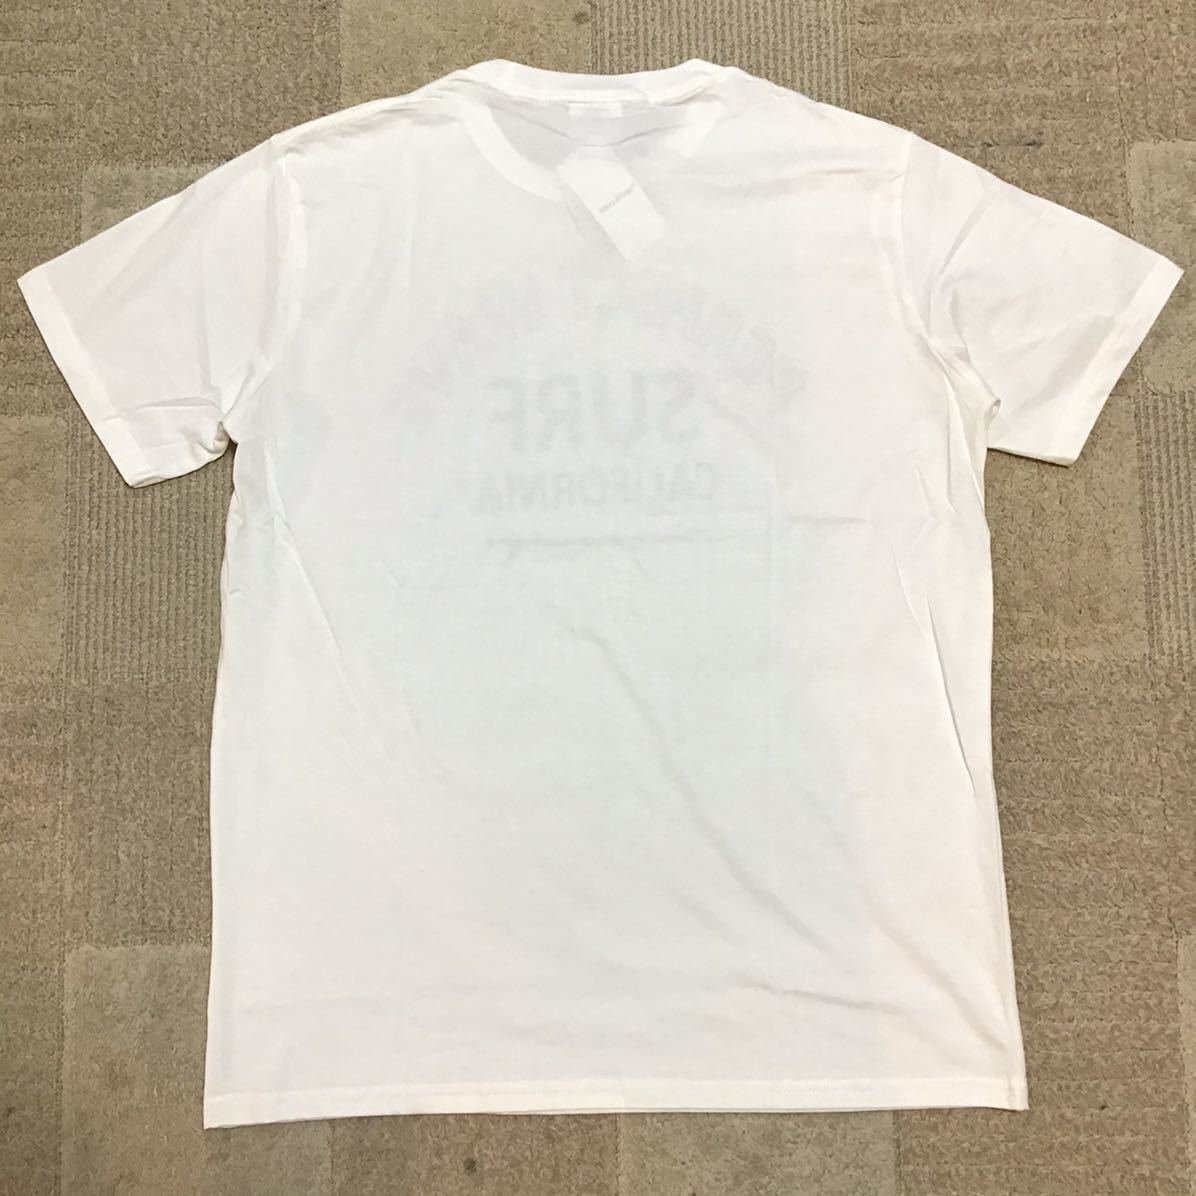 処分価格 新品未使用 半袖Tシャツ メンズ サーフロゴTee 送料無料 XLサイズ ホワイト オススメ限定激安